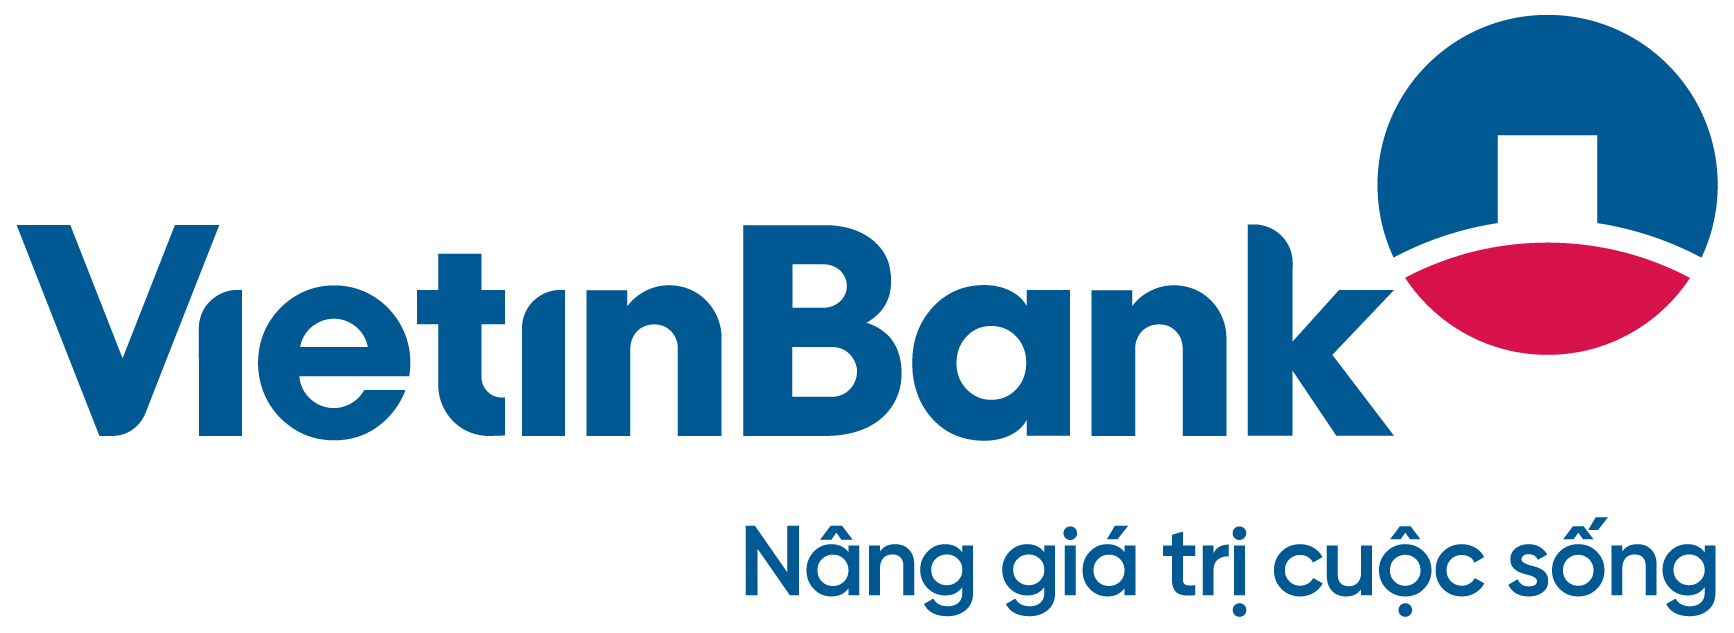 Logo mới của Vietinbank được ra mắt ngày 3/5/2017